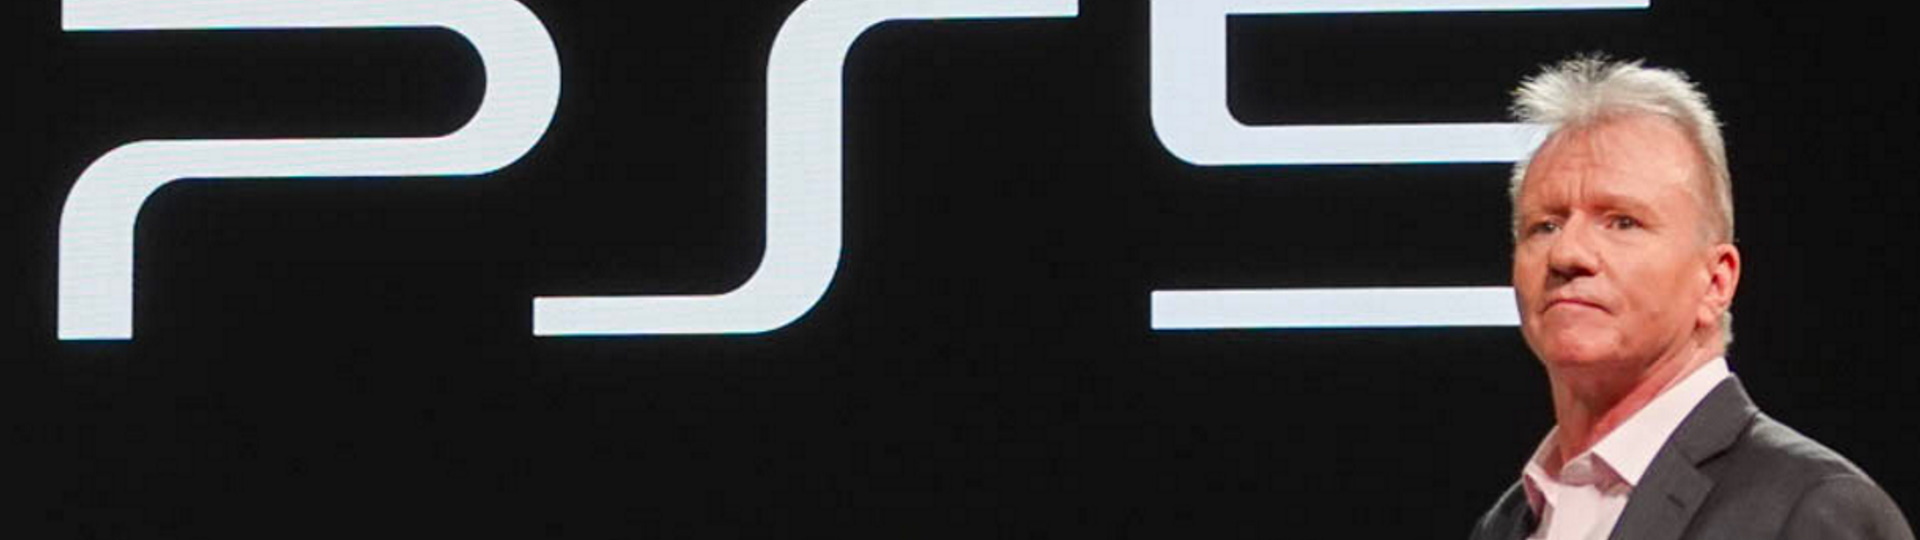 Sony získala více předobjednávek za prvních 12 hodin než u PS4 za 12 týdnů | Novinky